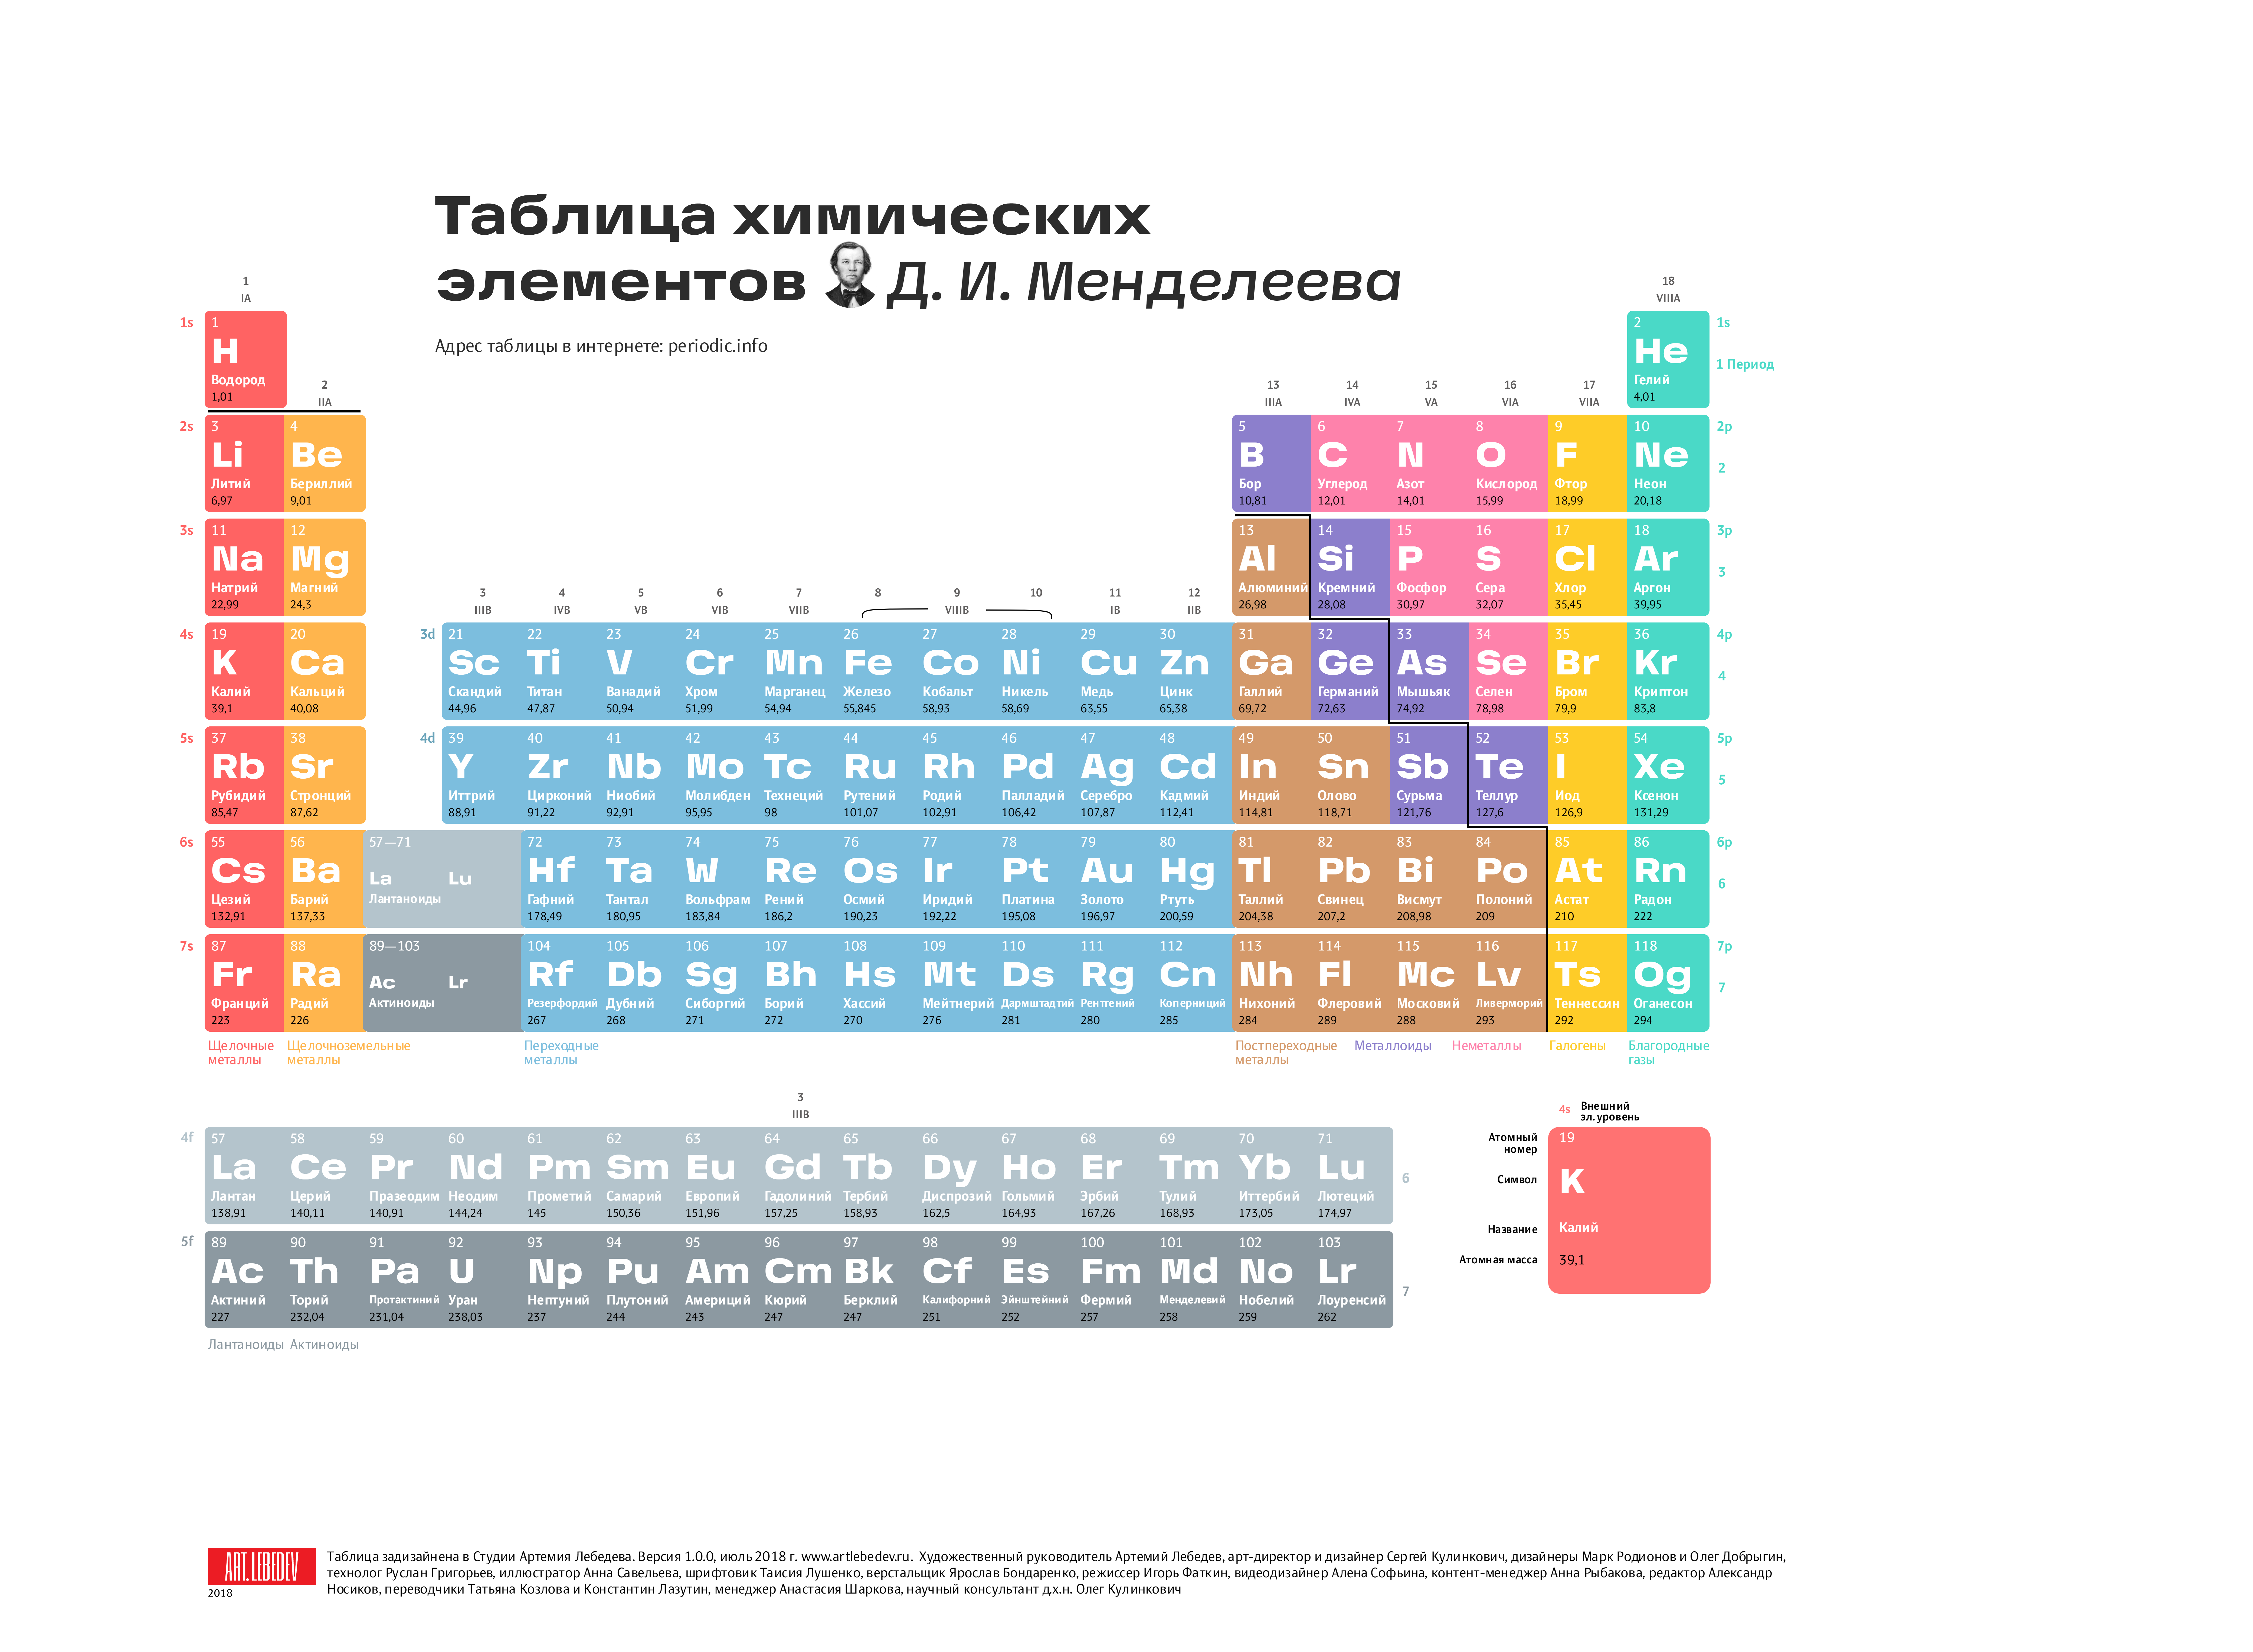 Таблица менделеева 2 буквы. Современная таблица Менделеева 118 элементов. Длиннопериодный вариант таблицы Менделеева. Первые 20 элементов таблицы Менделеева. Химия просто таблица Менделеева 2.0.